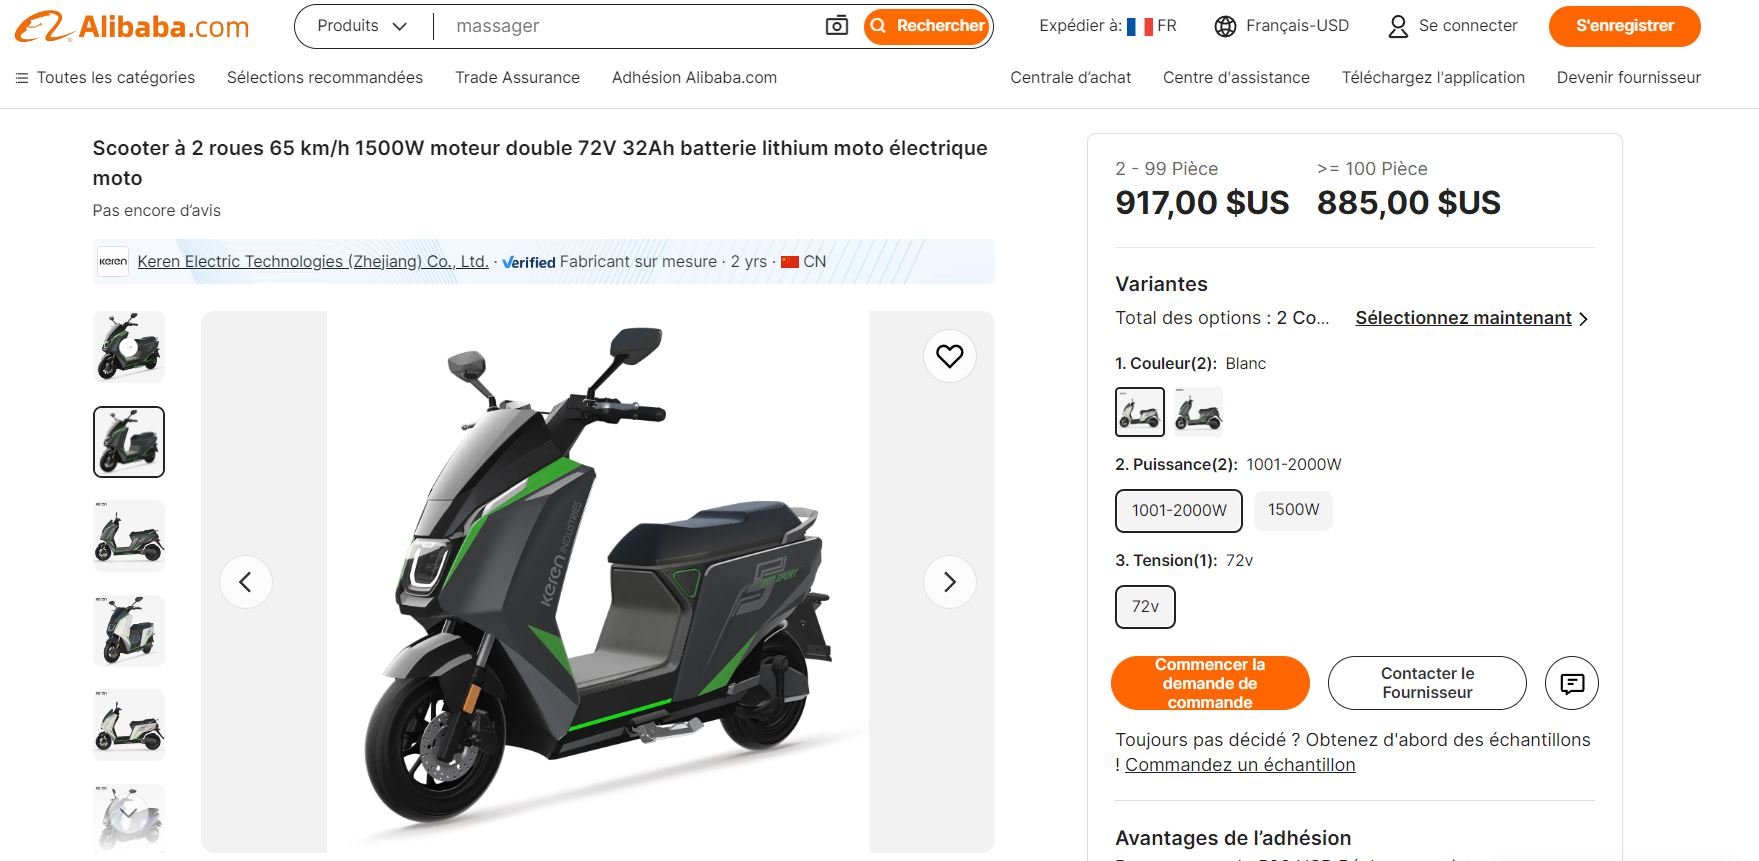 Une page Web présentant un scooter électrique en vente sur Alibaba.